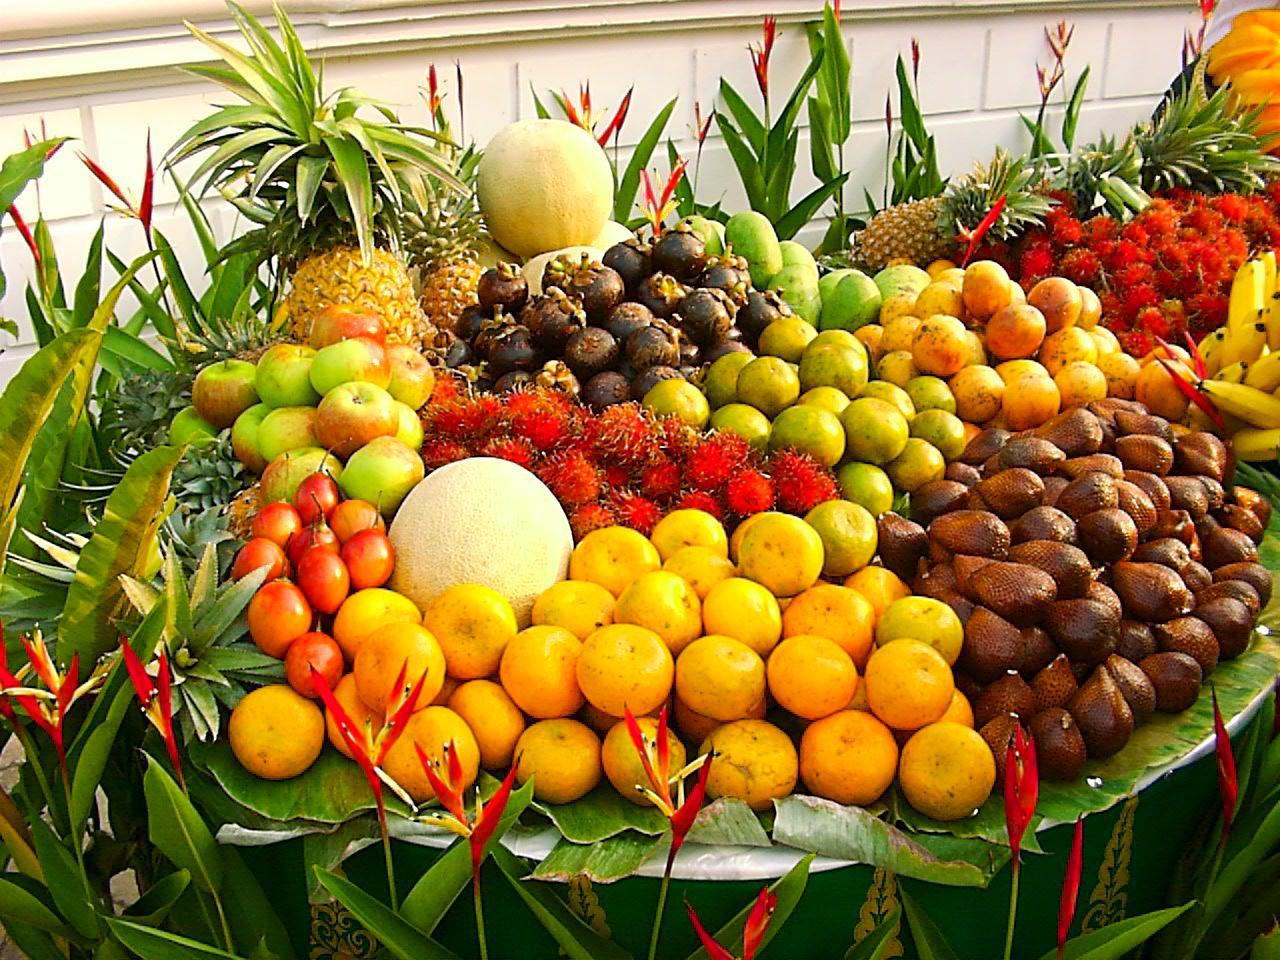 Buah-buahan, salah satu komoditas pertanian yang laris di pasar internasional